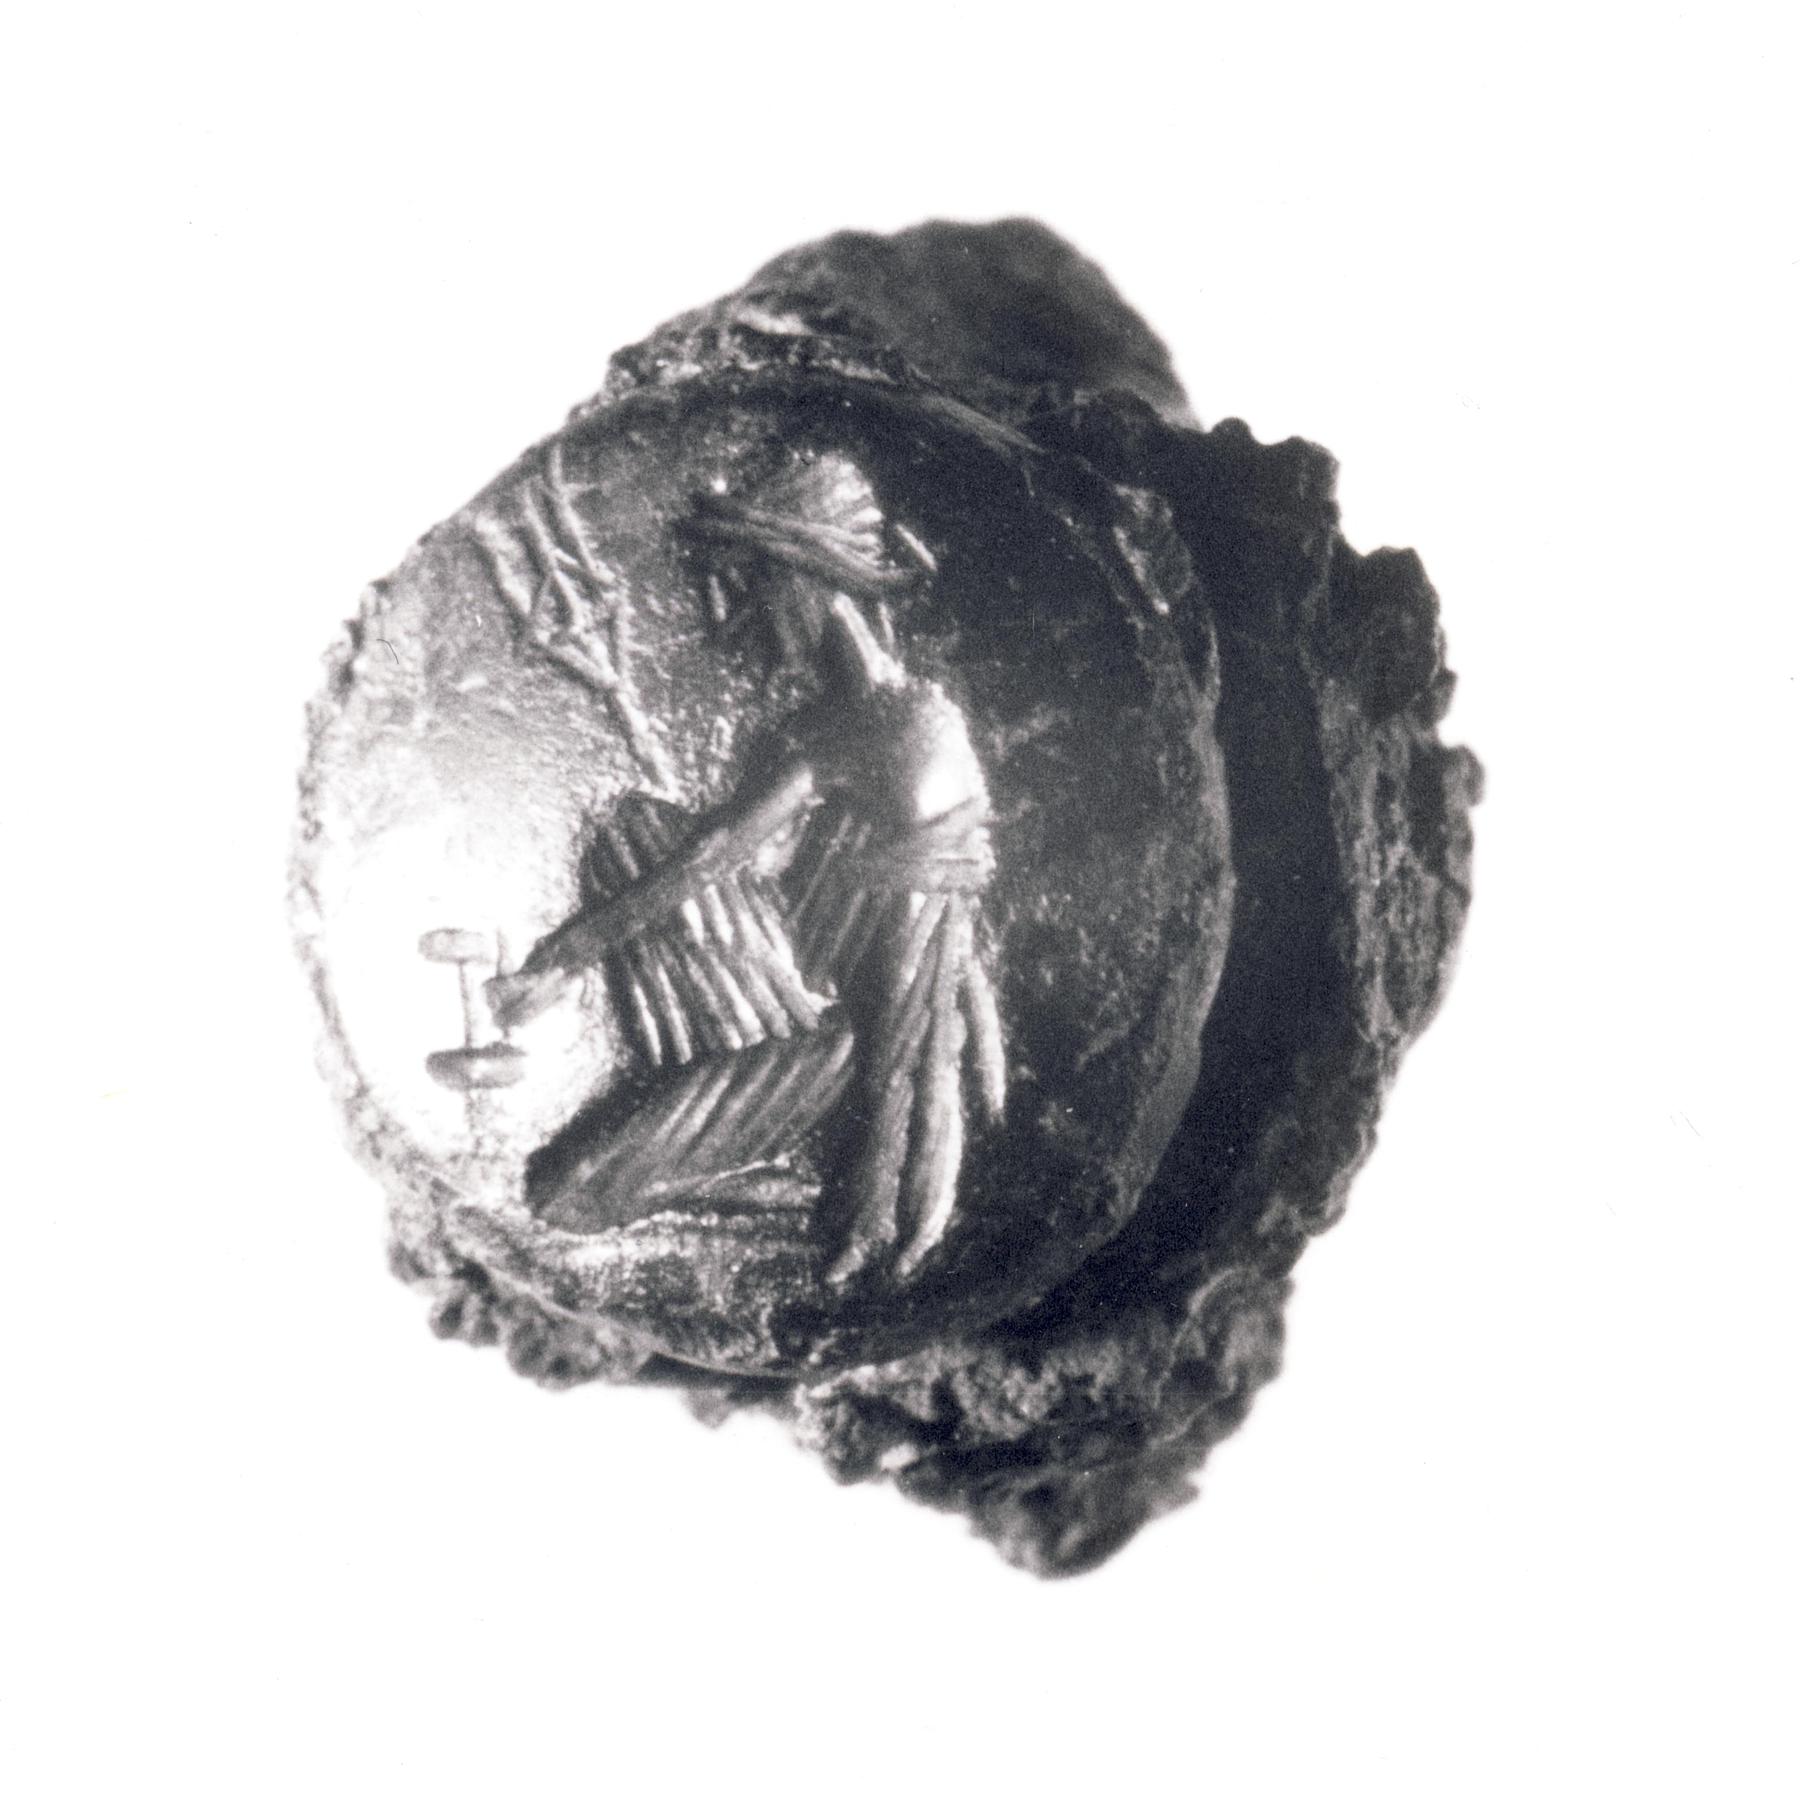 Amymone knælende ved kilden med en kande og Poseidons trefork, I142